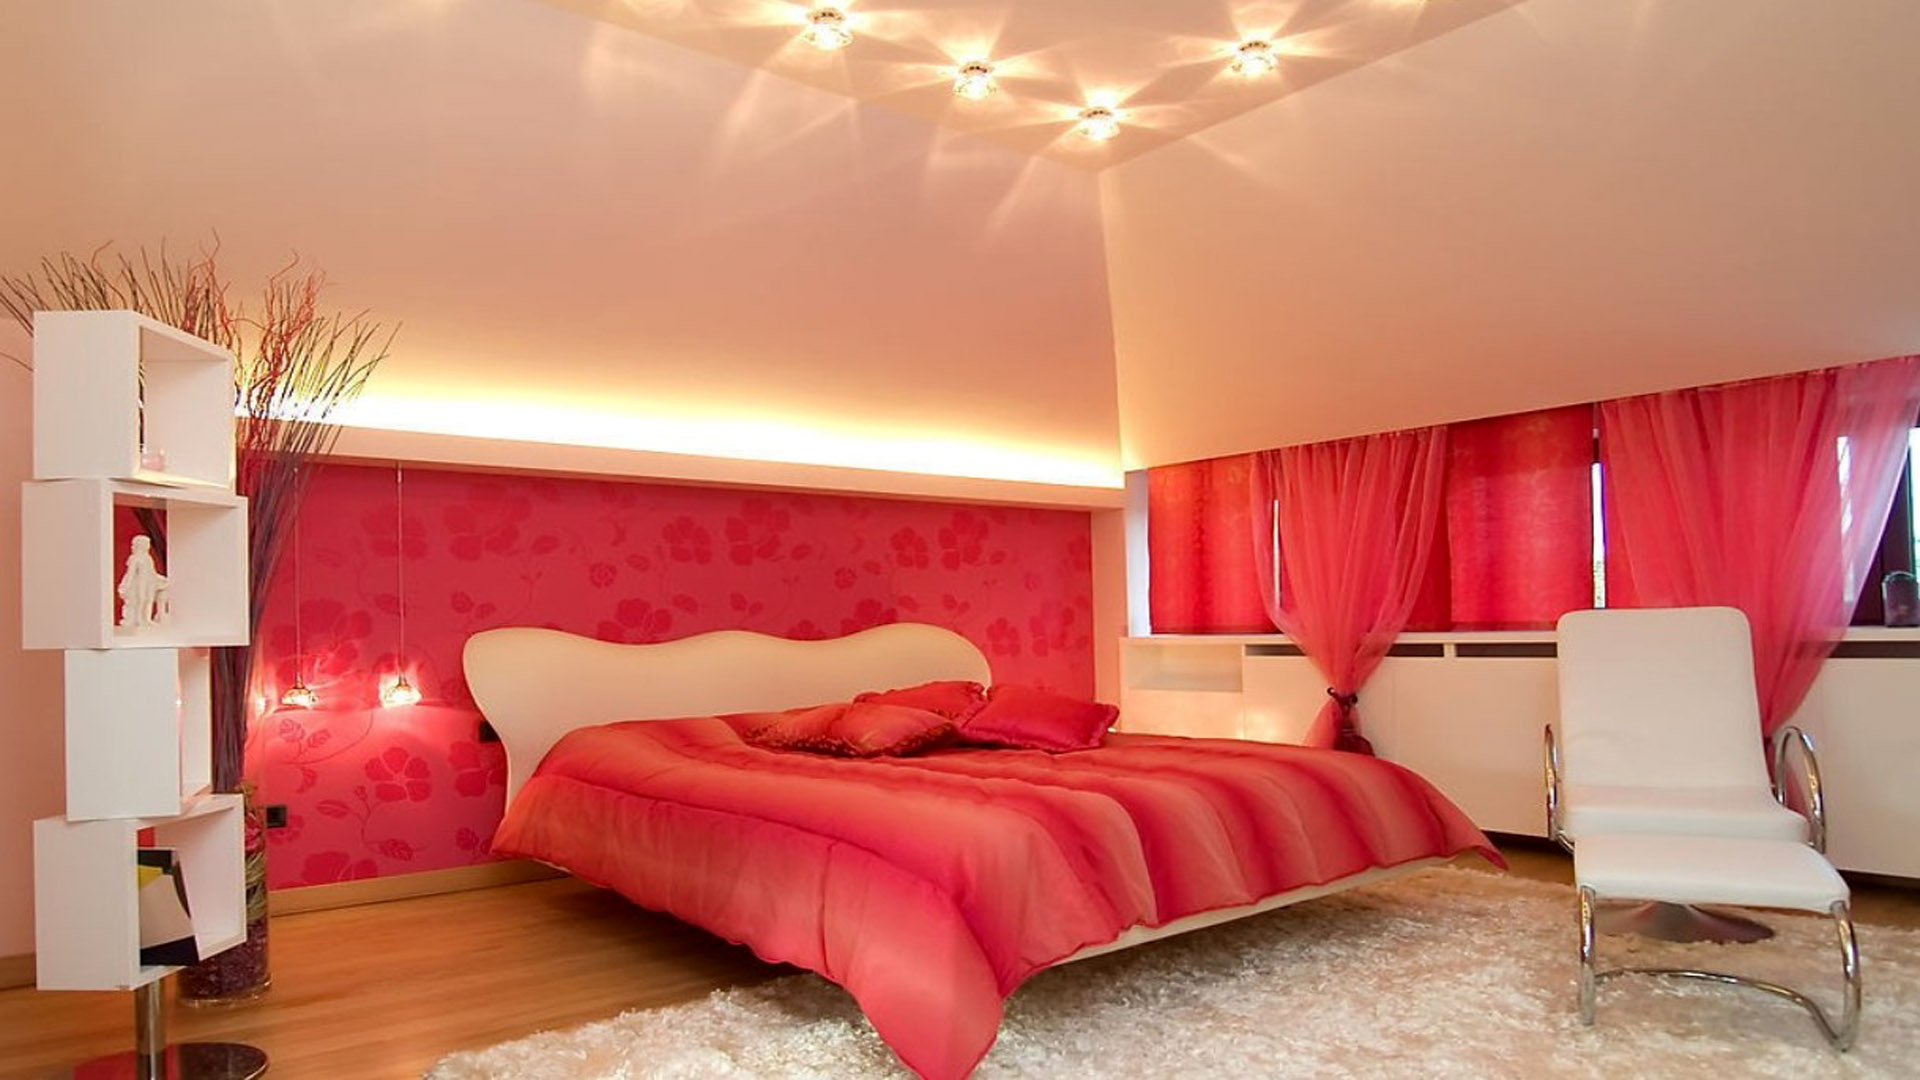 美しい寝室の壁紙,寝室,家具,ルーム,ベッド,天井